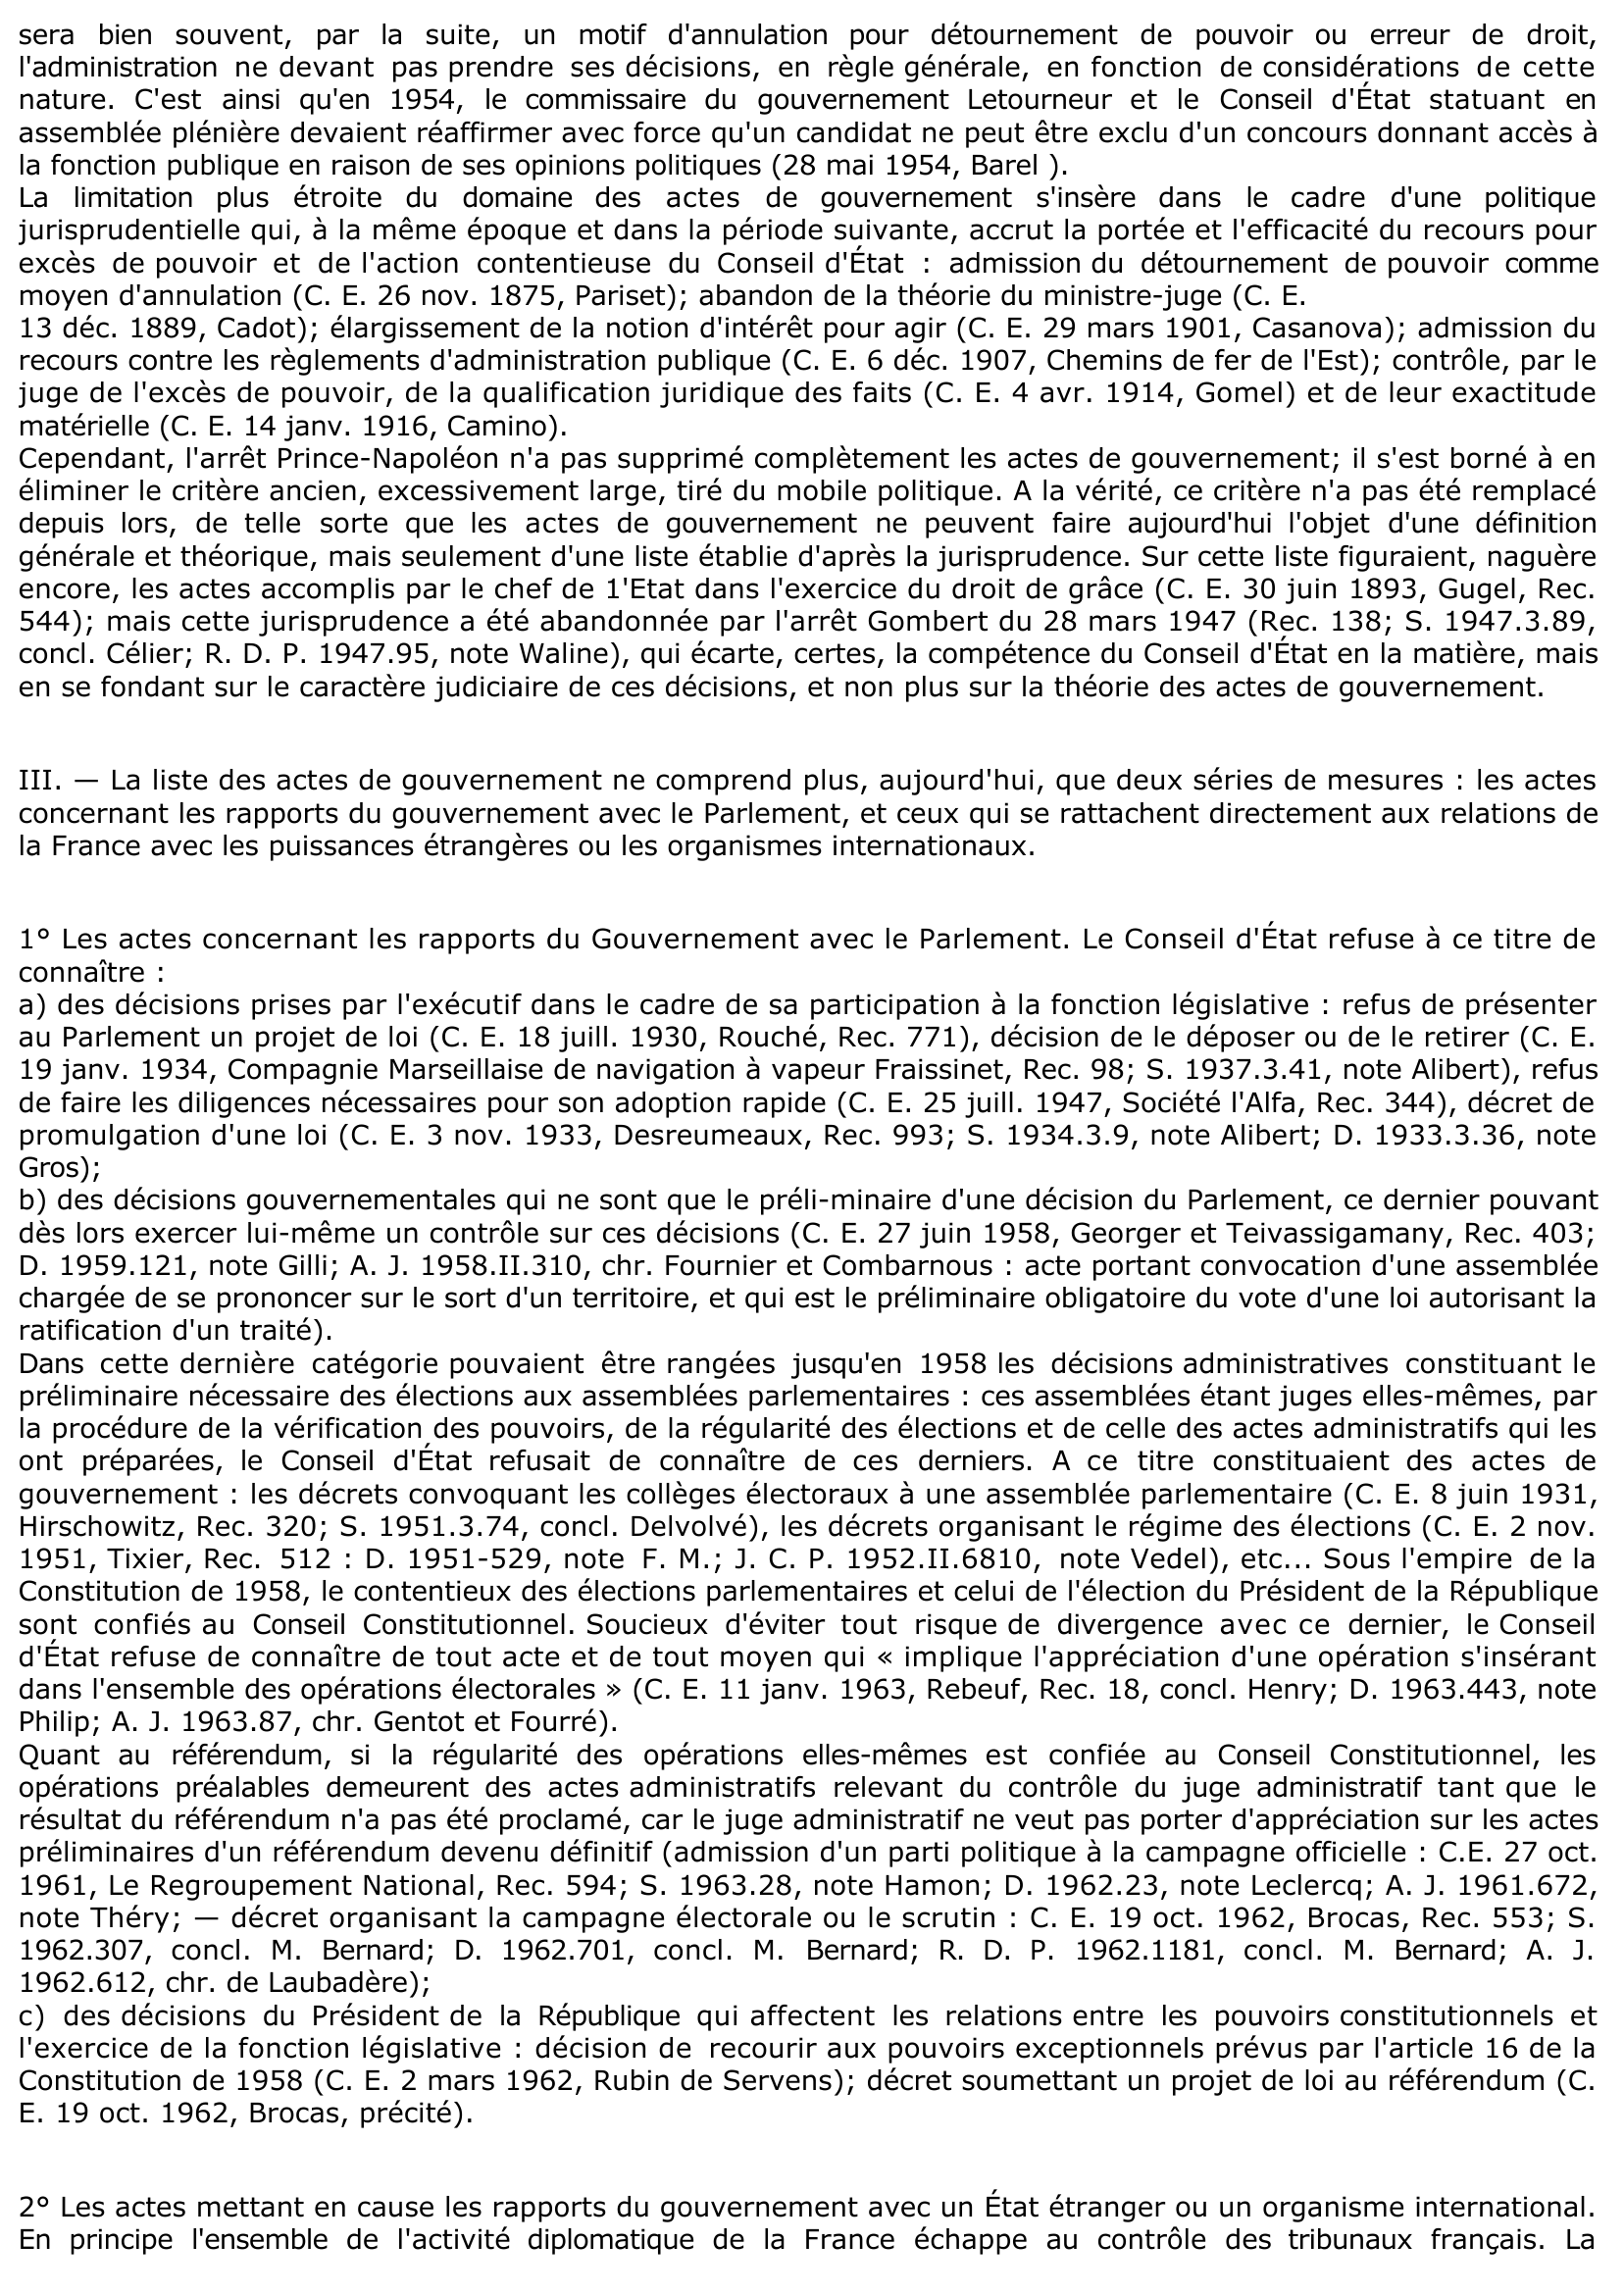 Prévisualisation du document ACTES DE GOUVERNEMENT - C. E. 19 févr. 1875, PRINCE NAPOLÉON - Rec. 155, concl. David - (D. 1875.3.18, concl. David) - Commentaire d'arrêt.